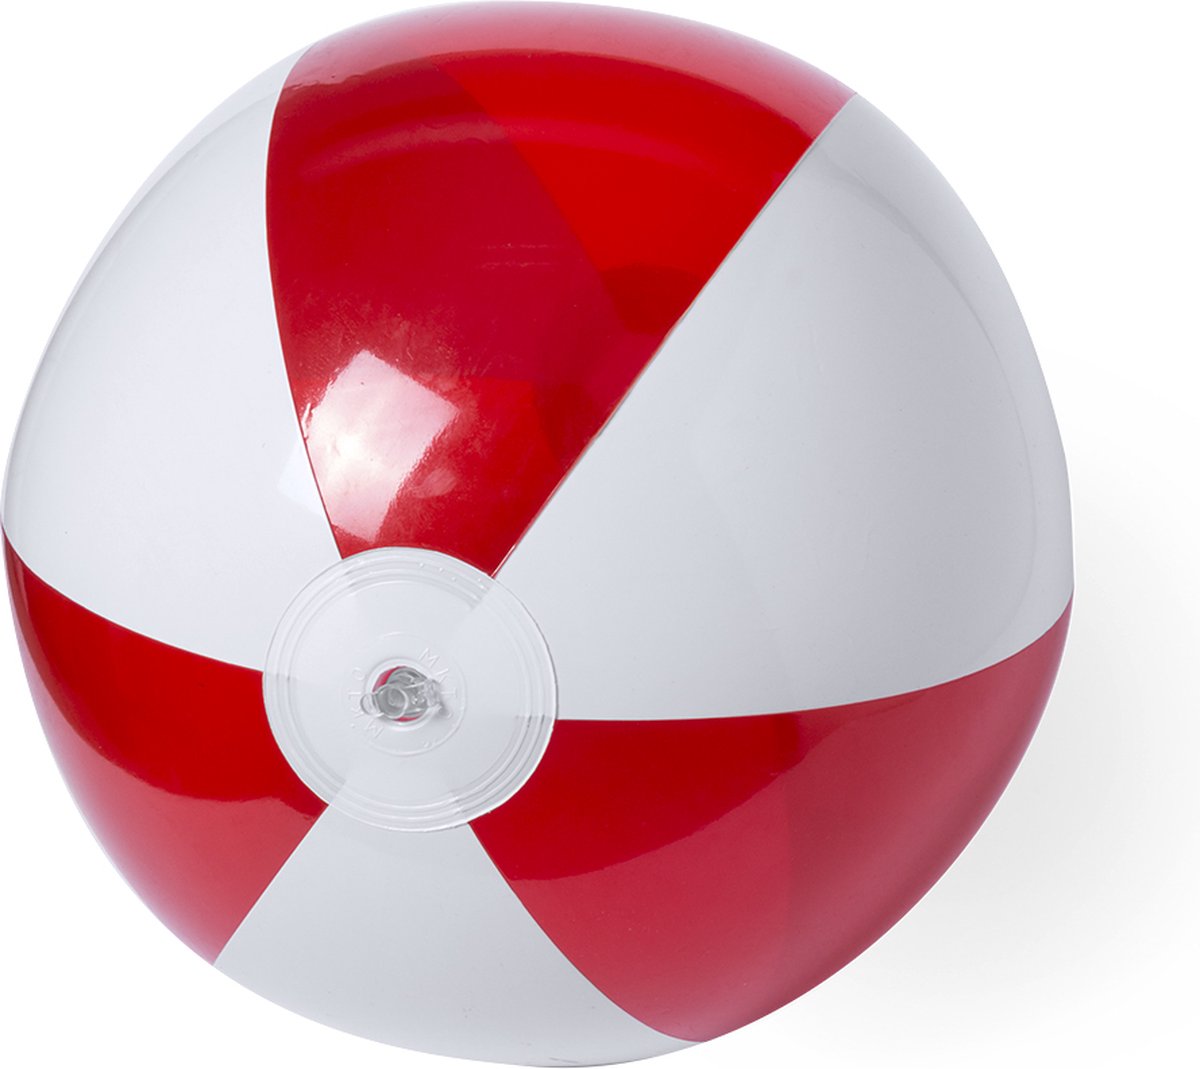 1x Ballon de plage jouet gonflable rouge / blanc 28 cm - Ballons